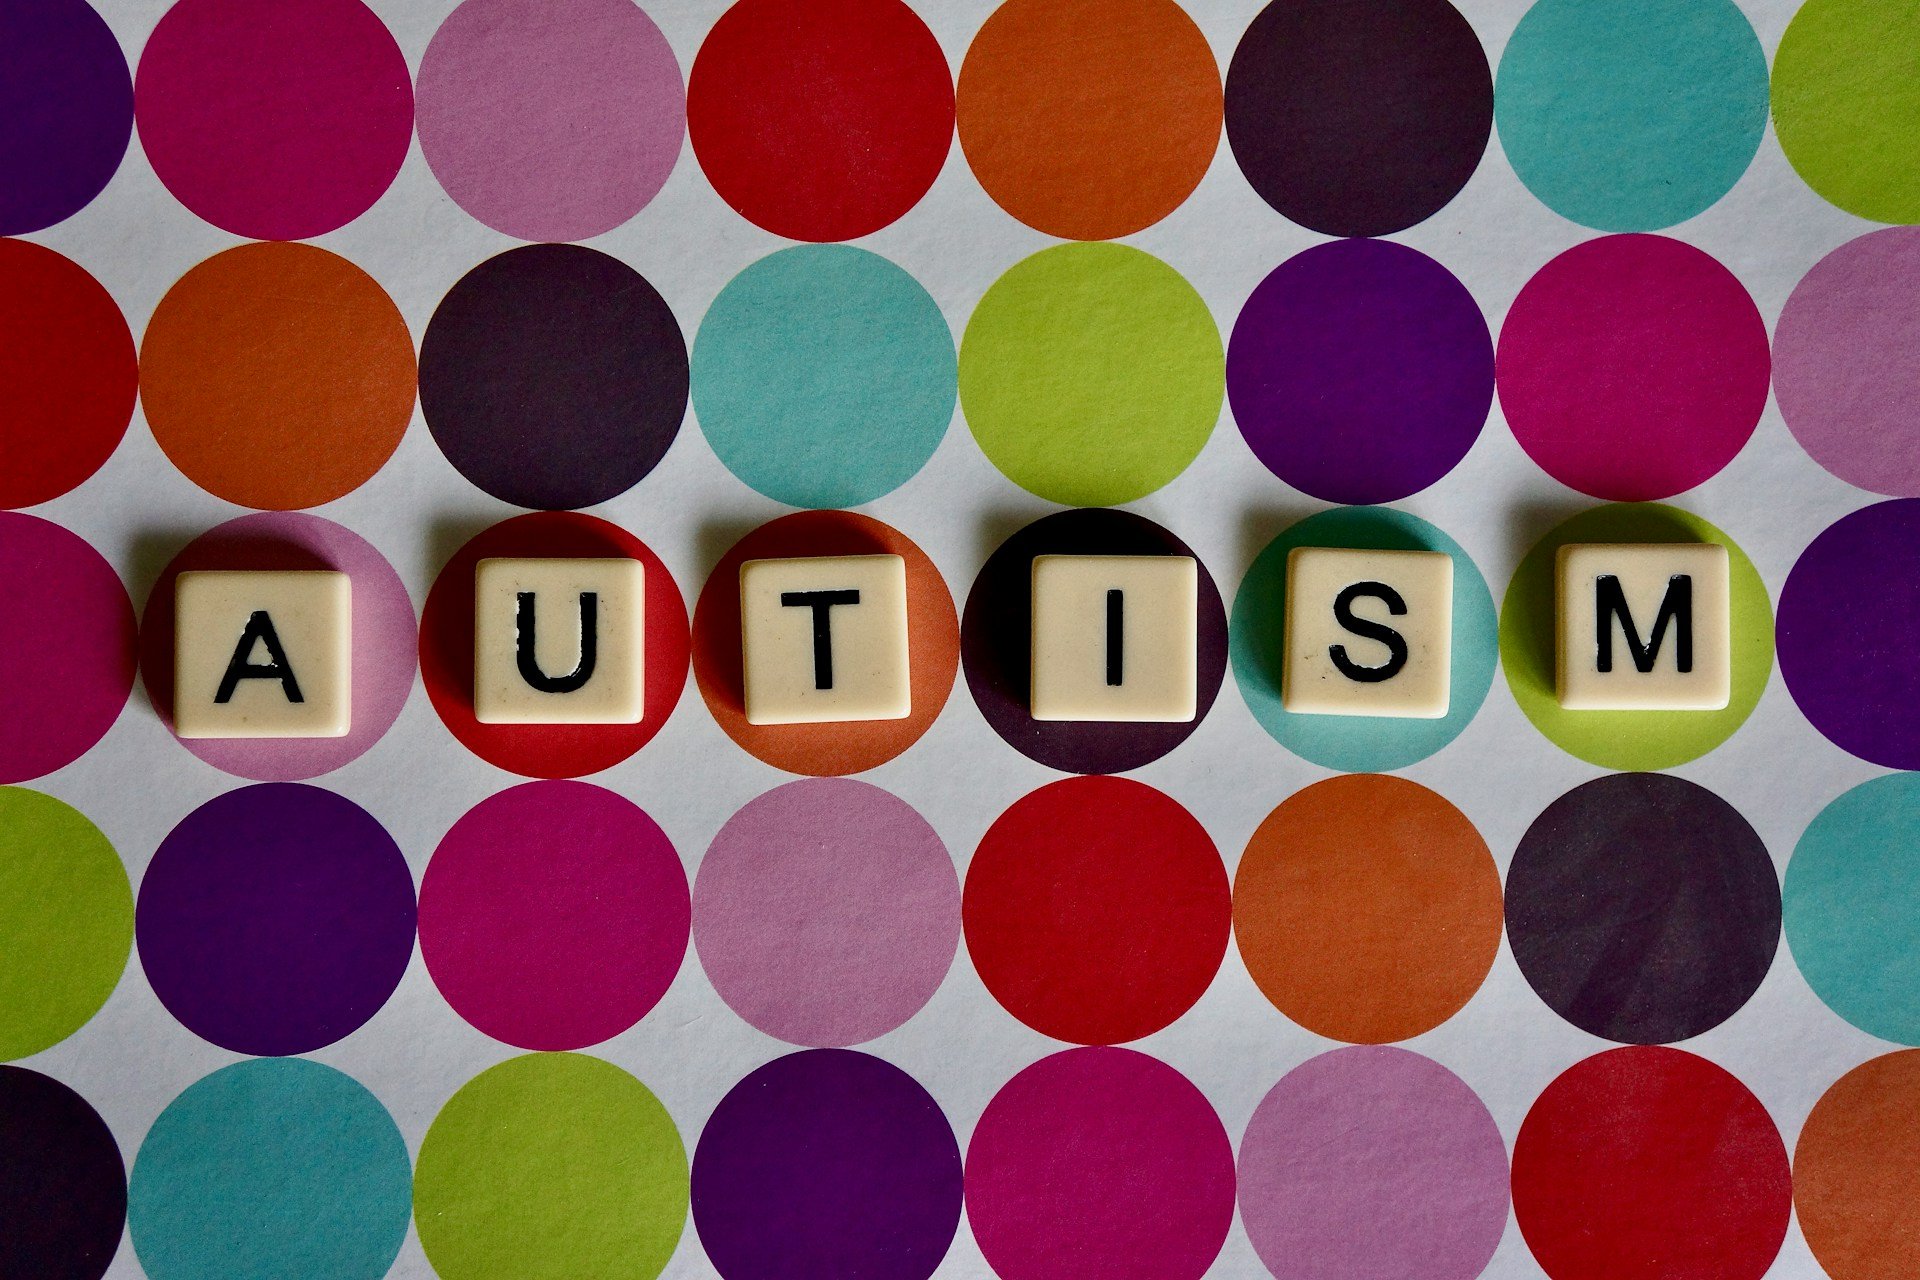 El aumento del autismo en la sociedad moderna